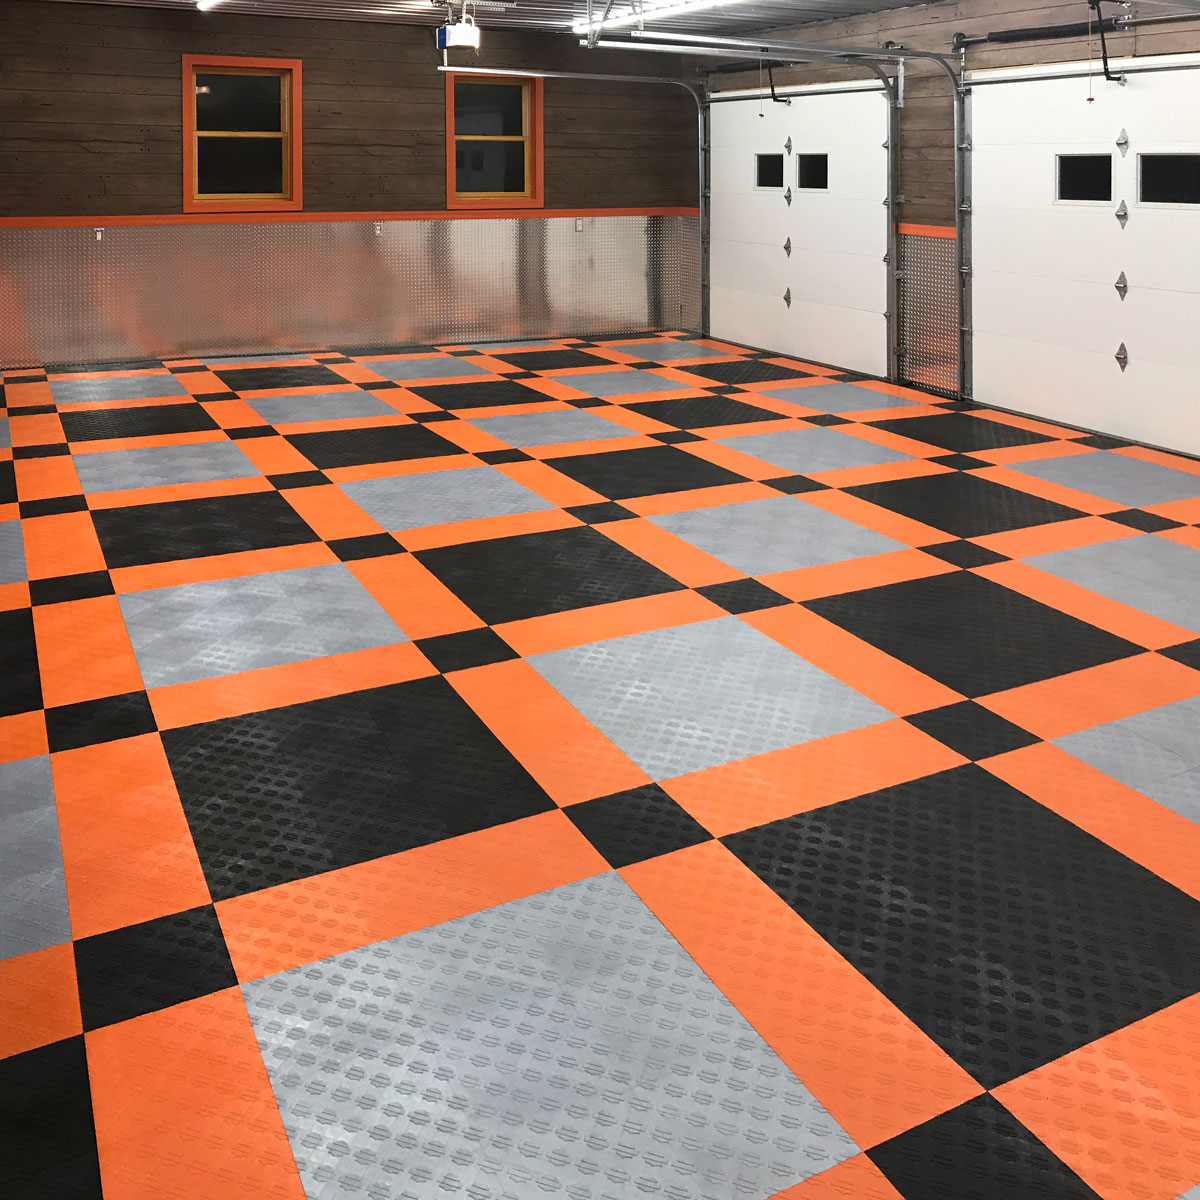 Harley Davidson Racedeck Garage Floors, Harley Davidson Tile